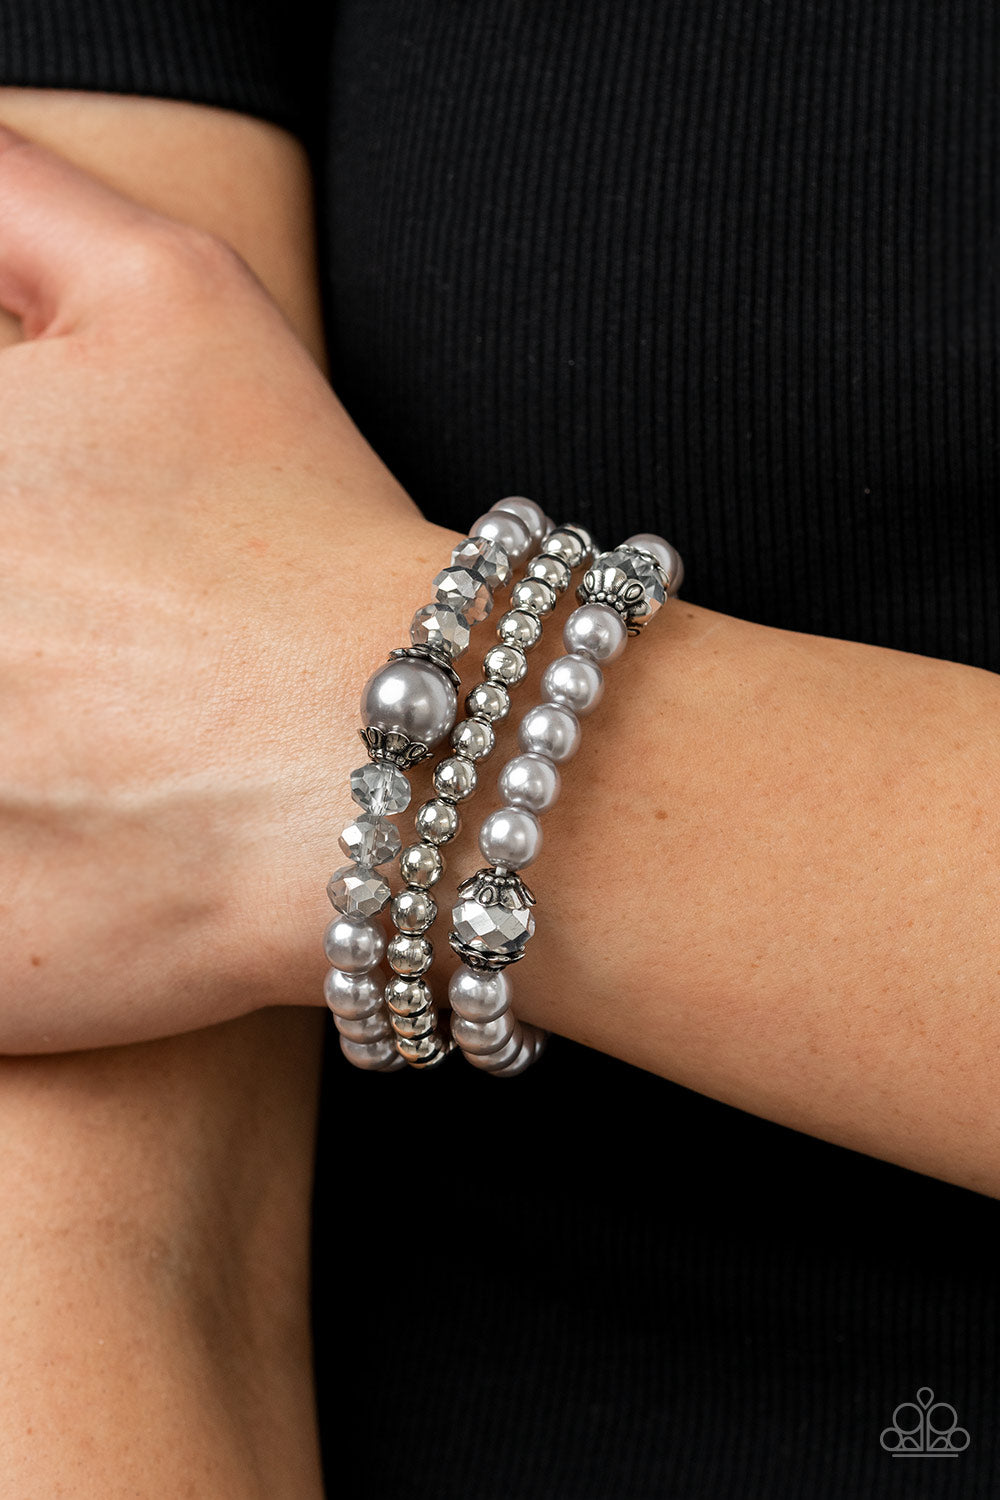 silver, silver jewelry, bracelet, stretch bracelet, paparazzi accessories, everyday jewelry, affordable jewelry